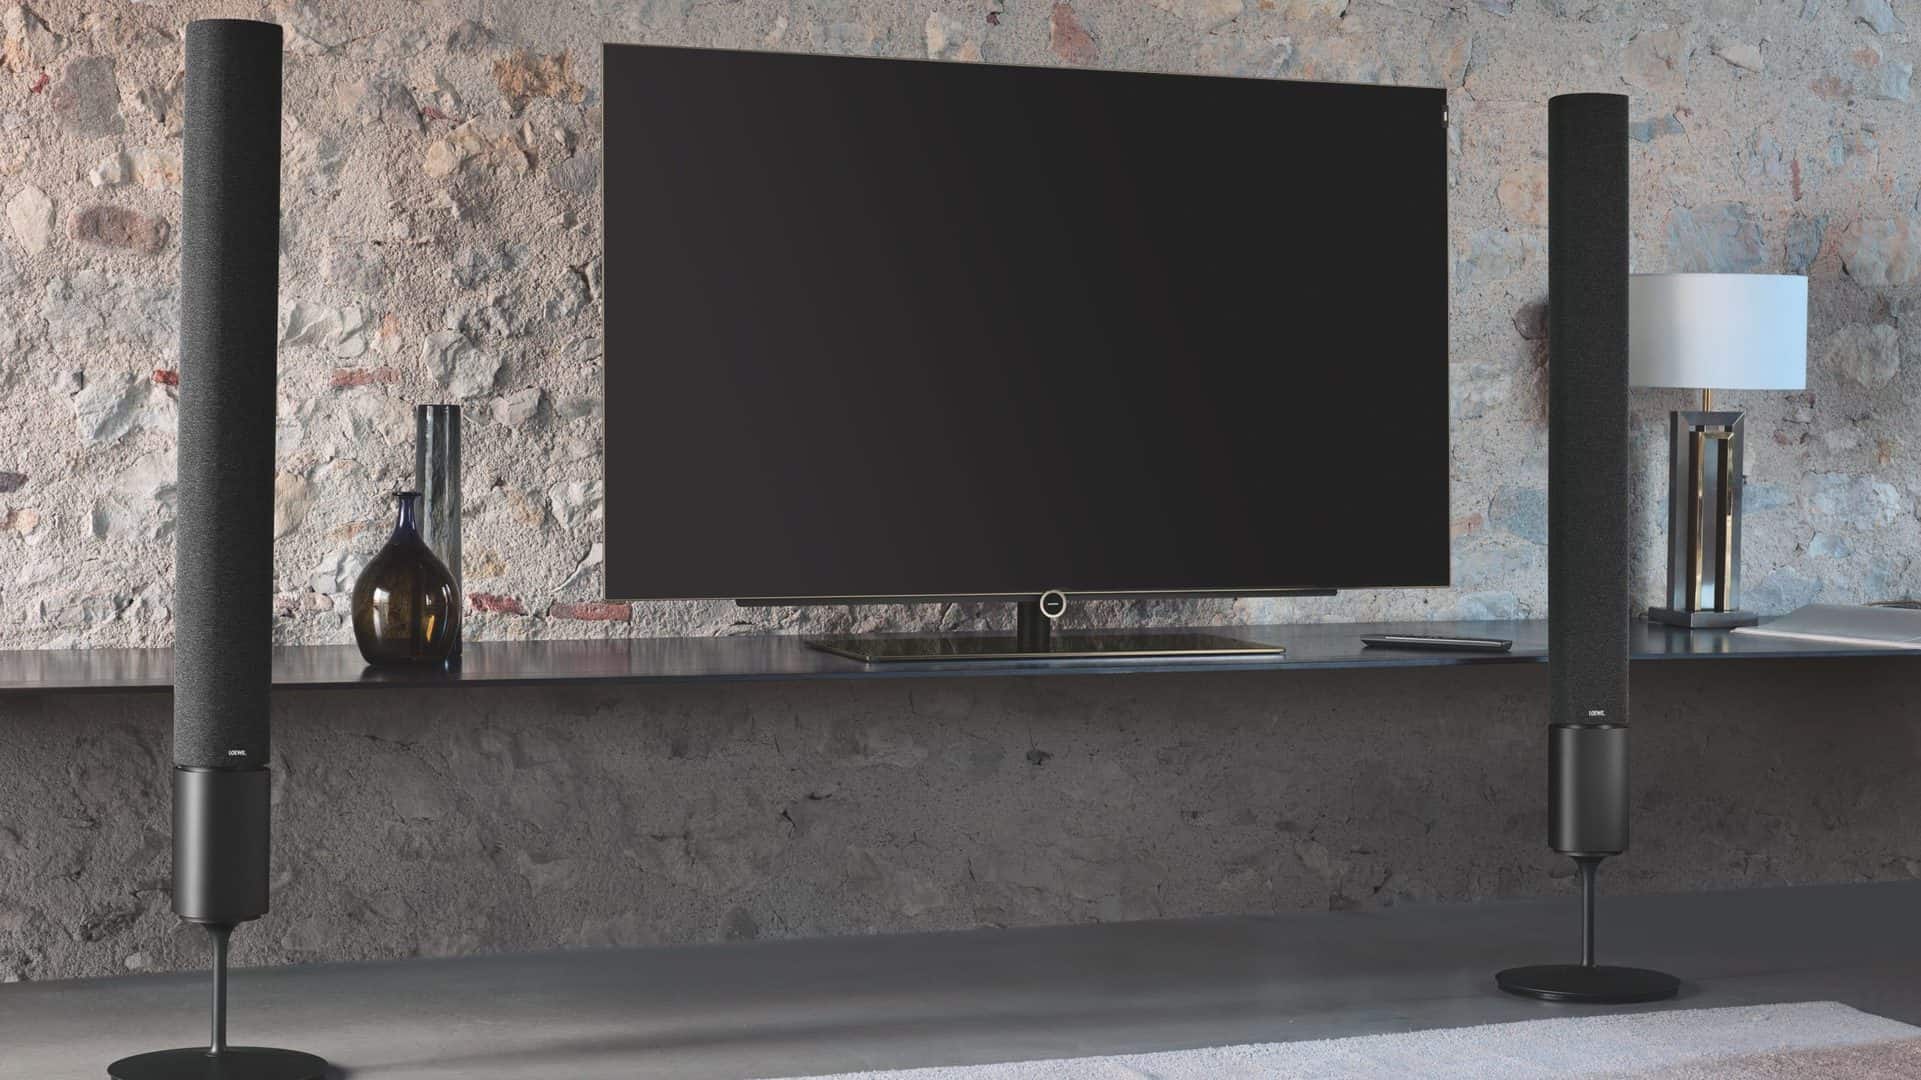 Afbeelding van een televisie met twee grote speakers ernaast. 